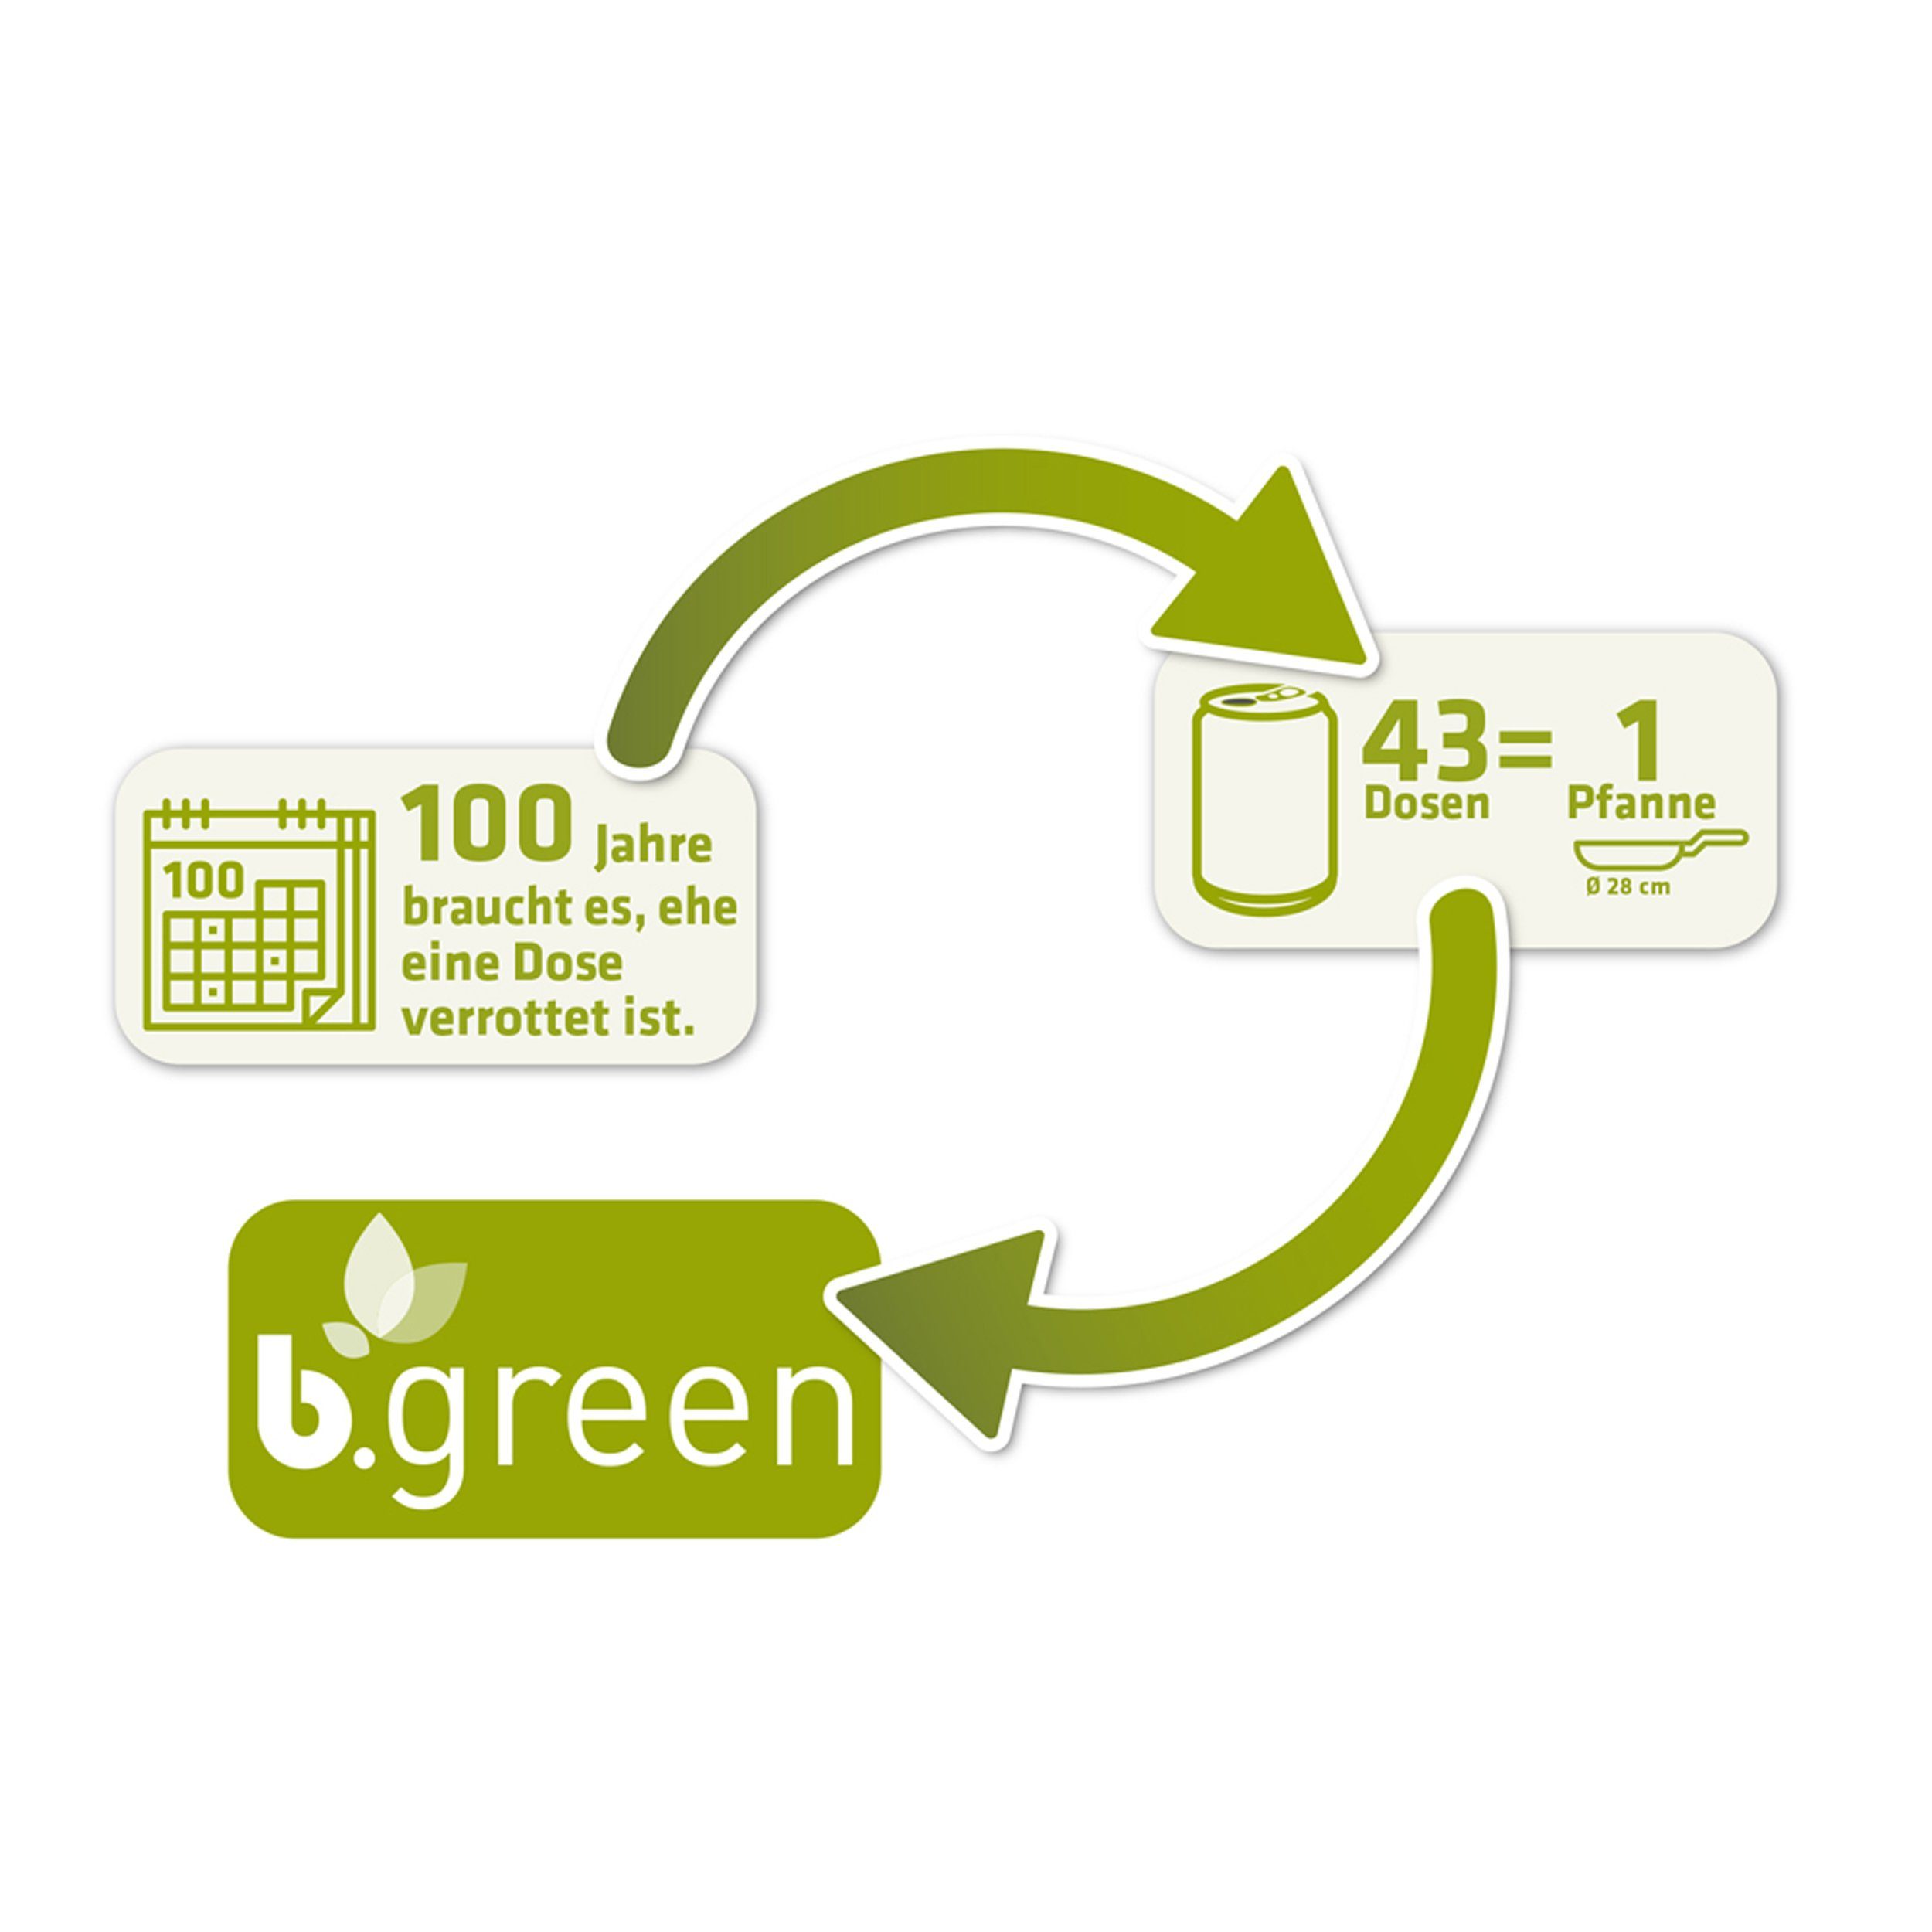 100 Dosen Induktionsgeeignet, b.green recycelten Pfanne % 28 Aus Bratpfanne Berndes cm Aluminium, Servierpfanne